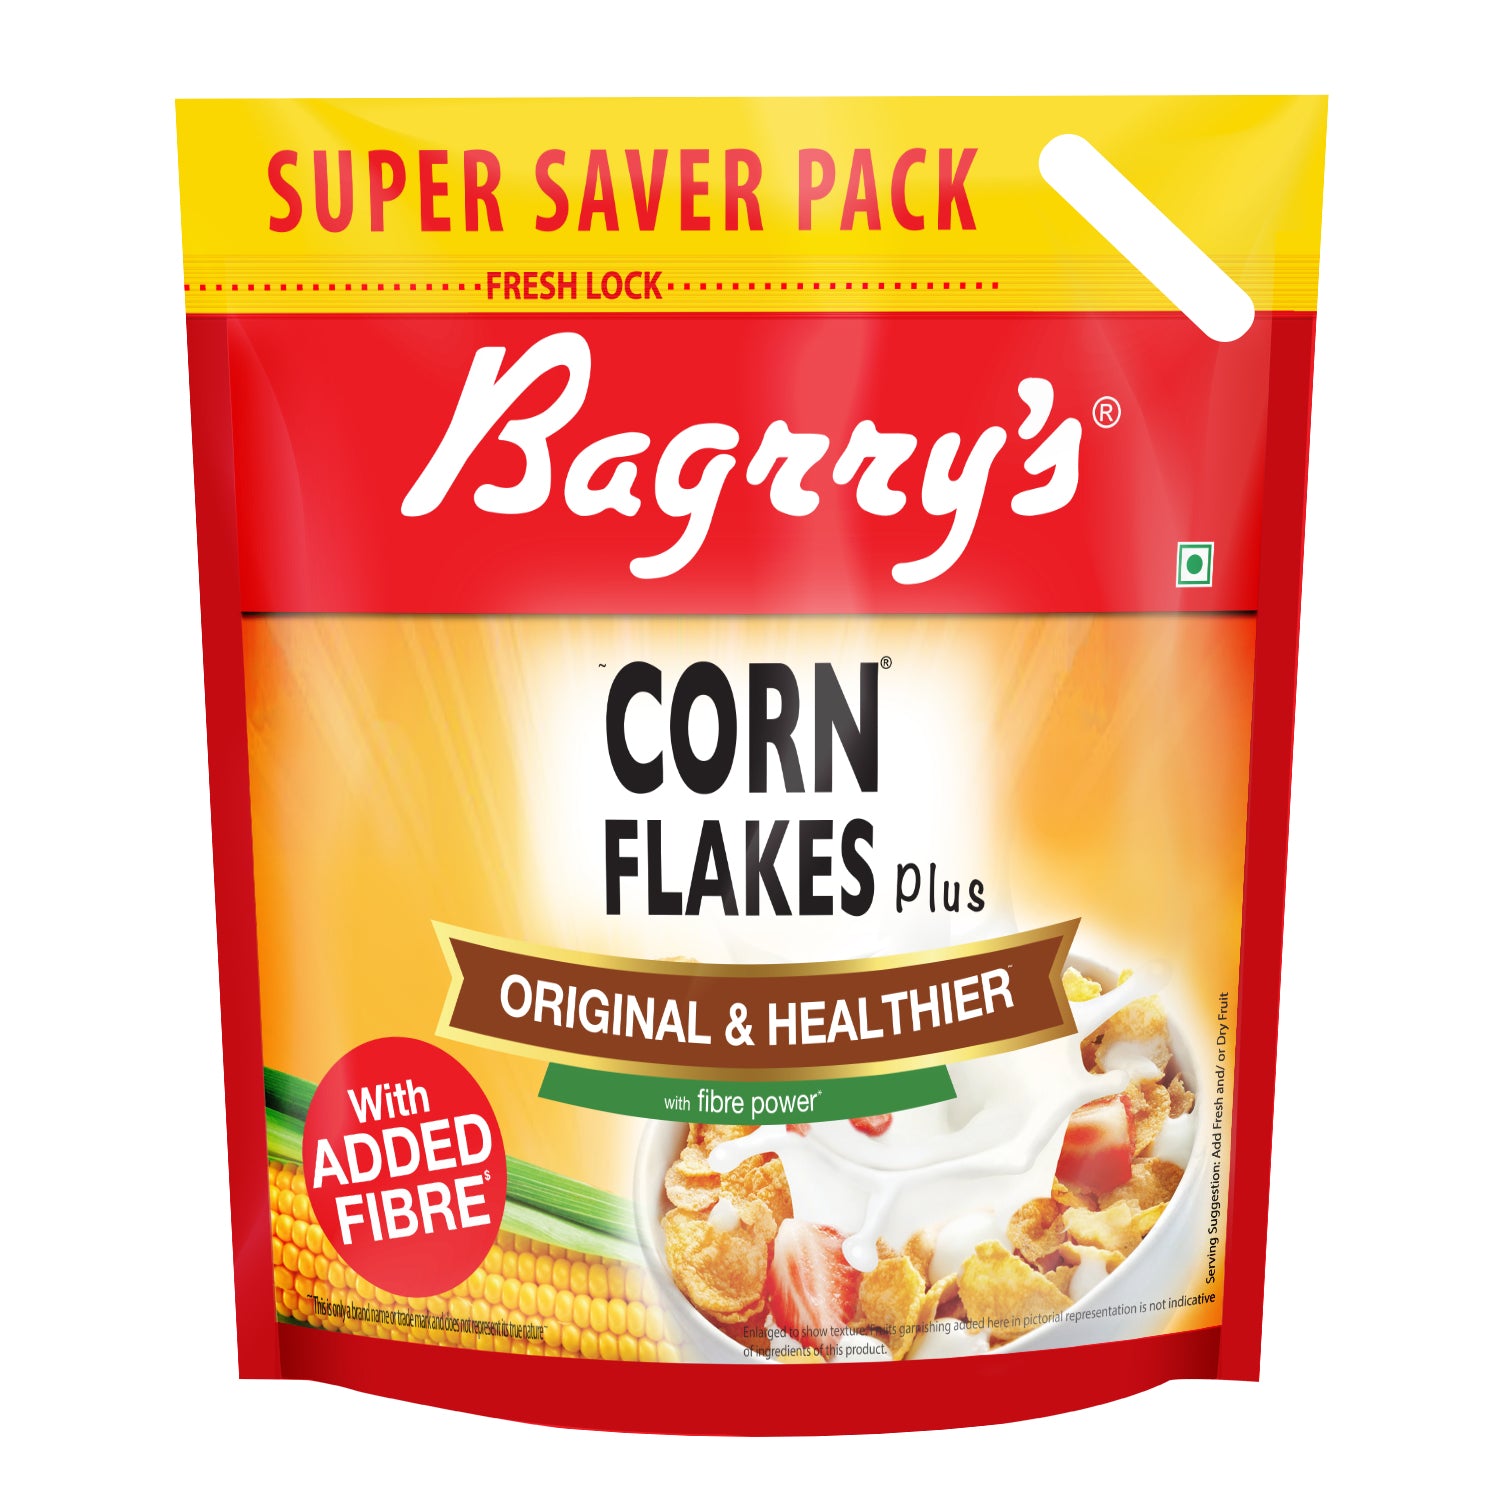 Bagrry's 2X Fibre Rich Corn Flakes Plus - Original and Healthier